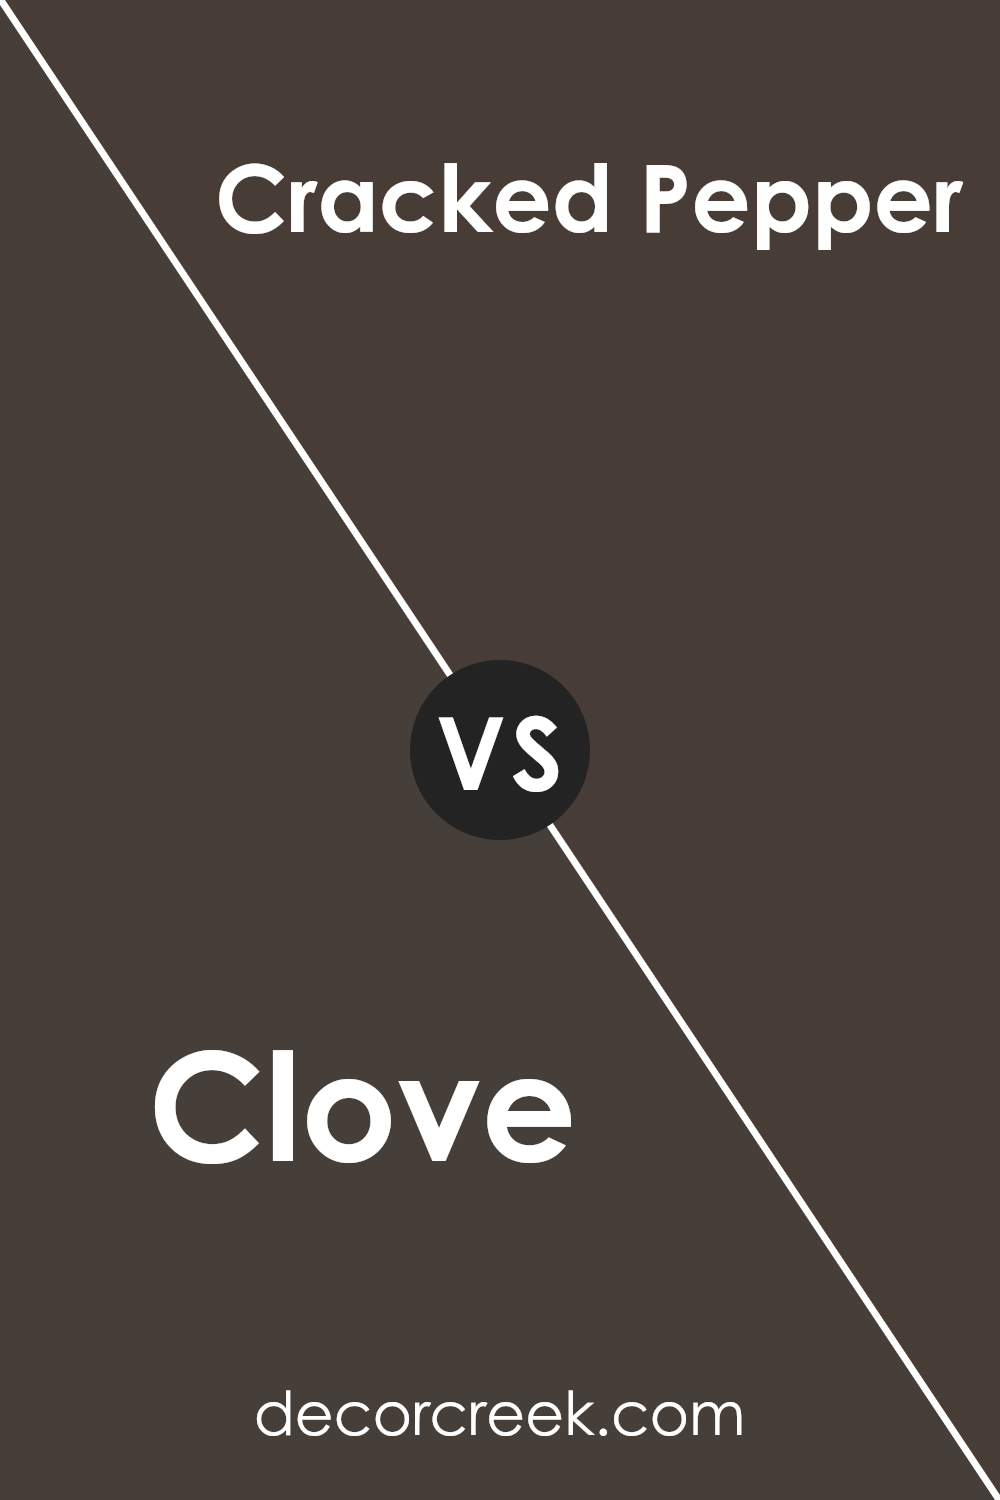 clove_sw_9605_vs_cracked_pepper_sw_9580